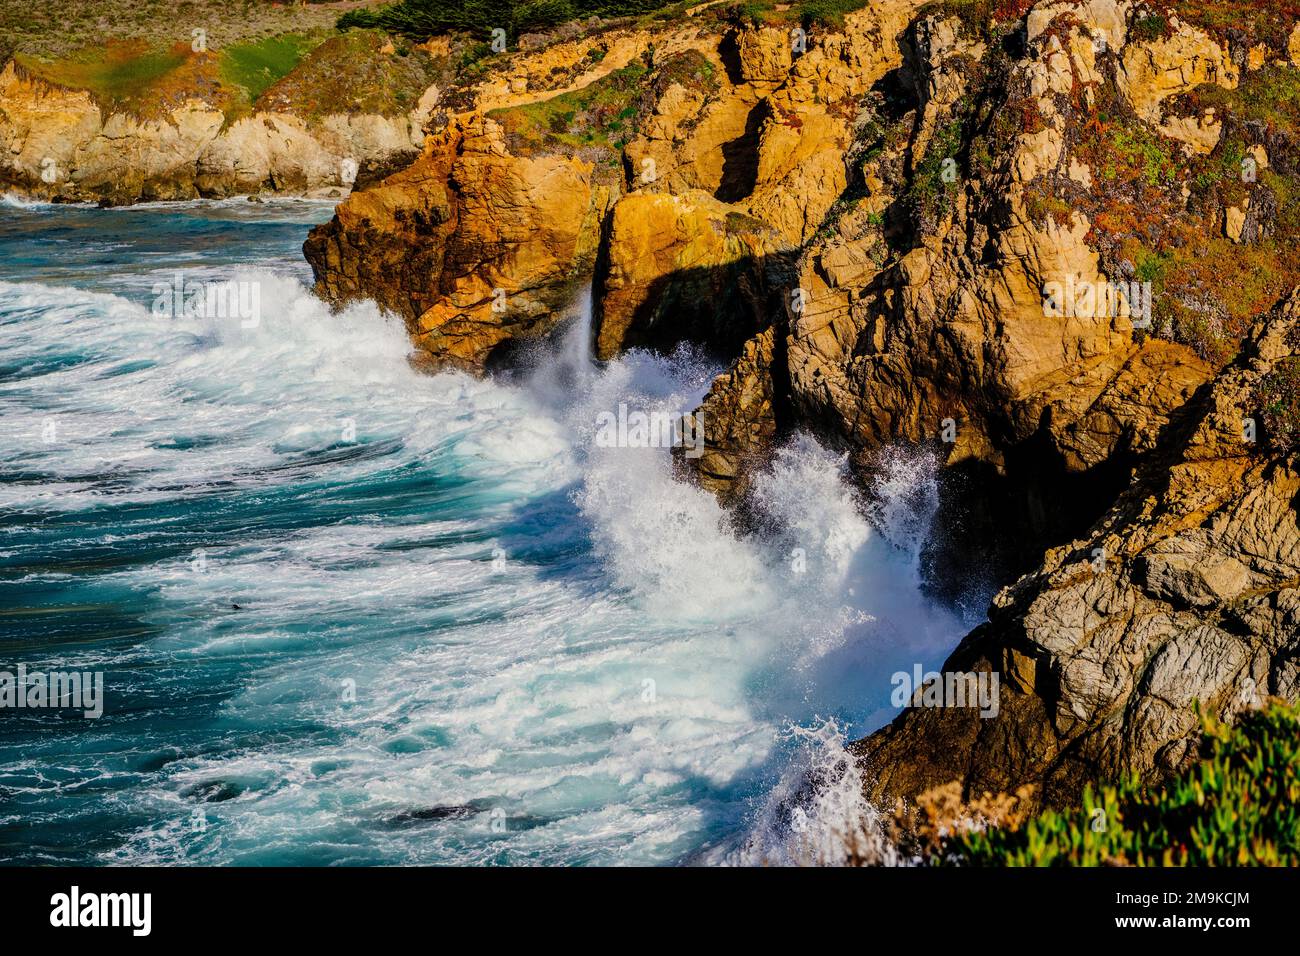 Vagues s'écrasant sur la côte rocheuse, Big sur, comté de Monterey, Californie, États-Unis Banque D'Images